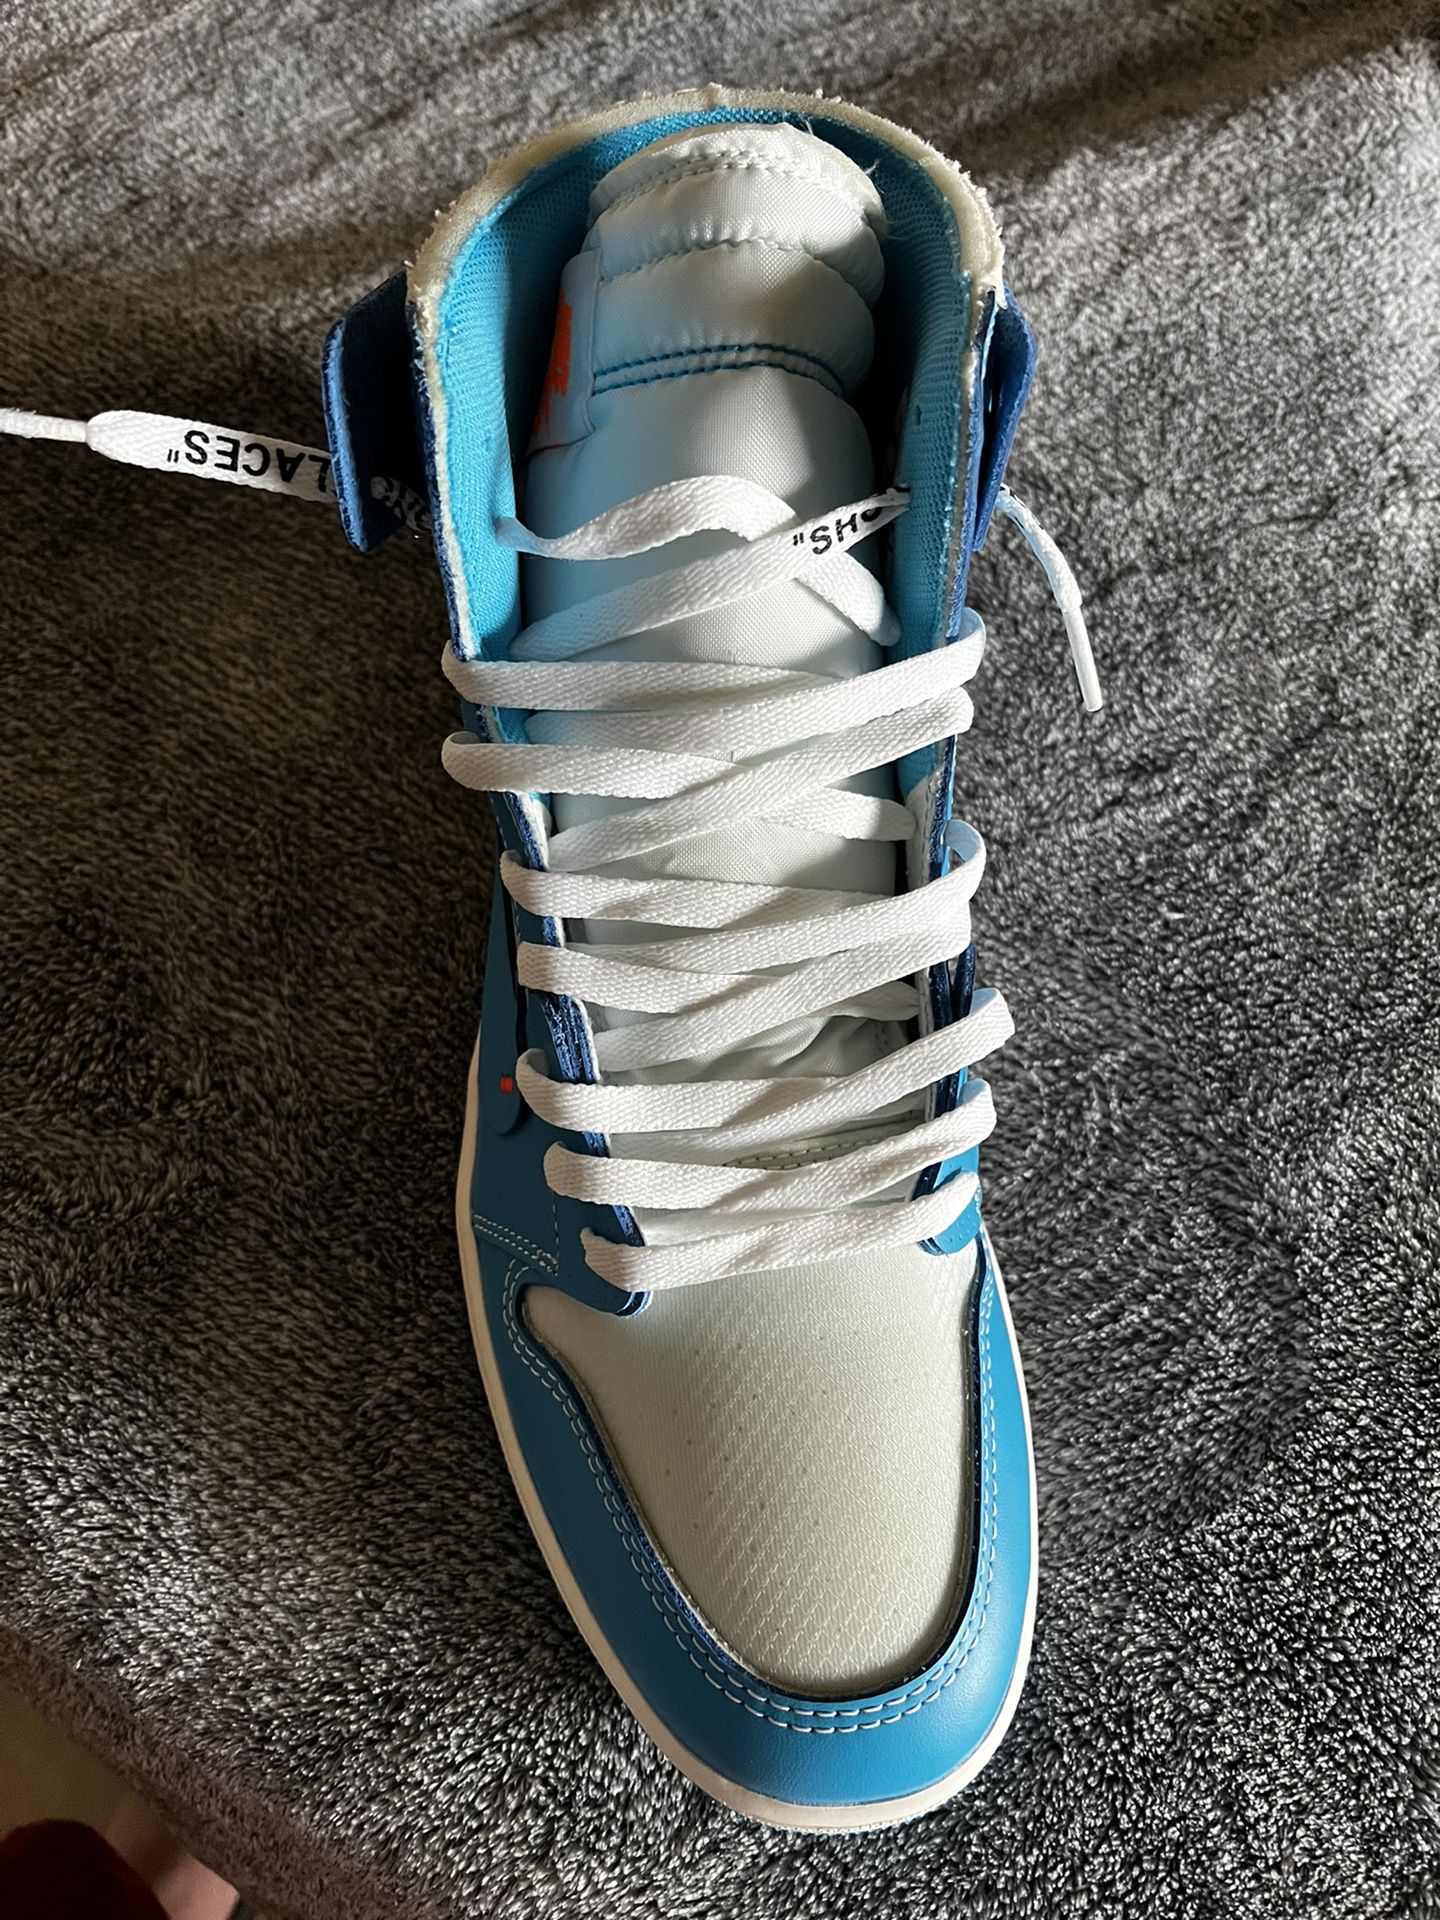 More Jordan Sneakers 👟 at Nike Factory Store 